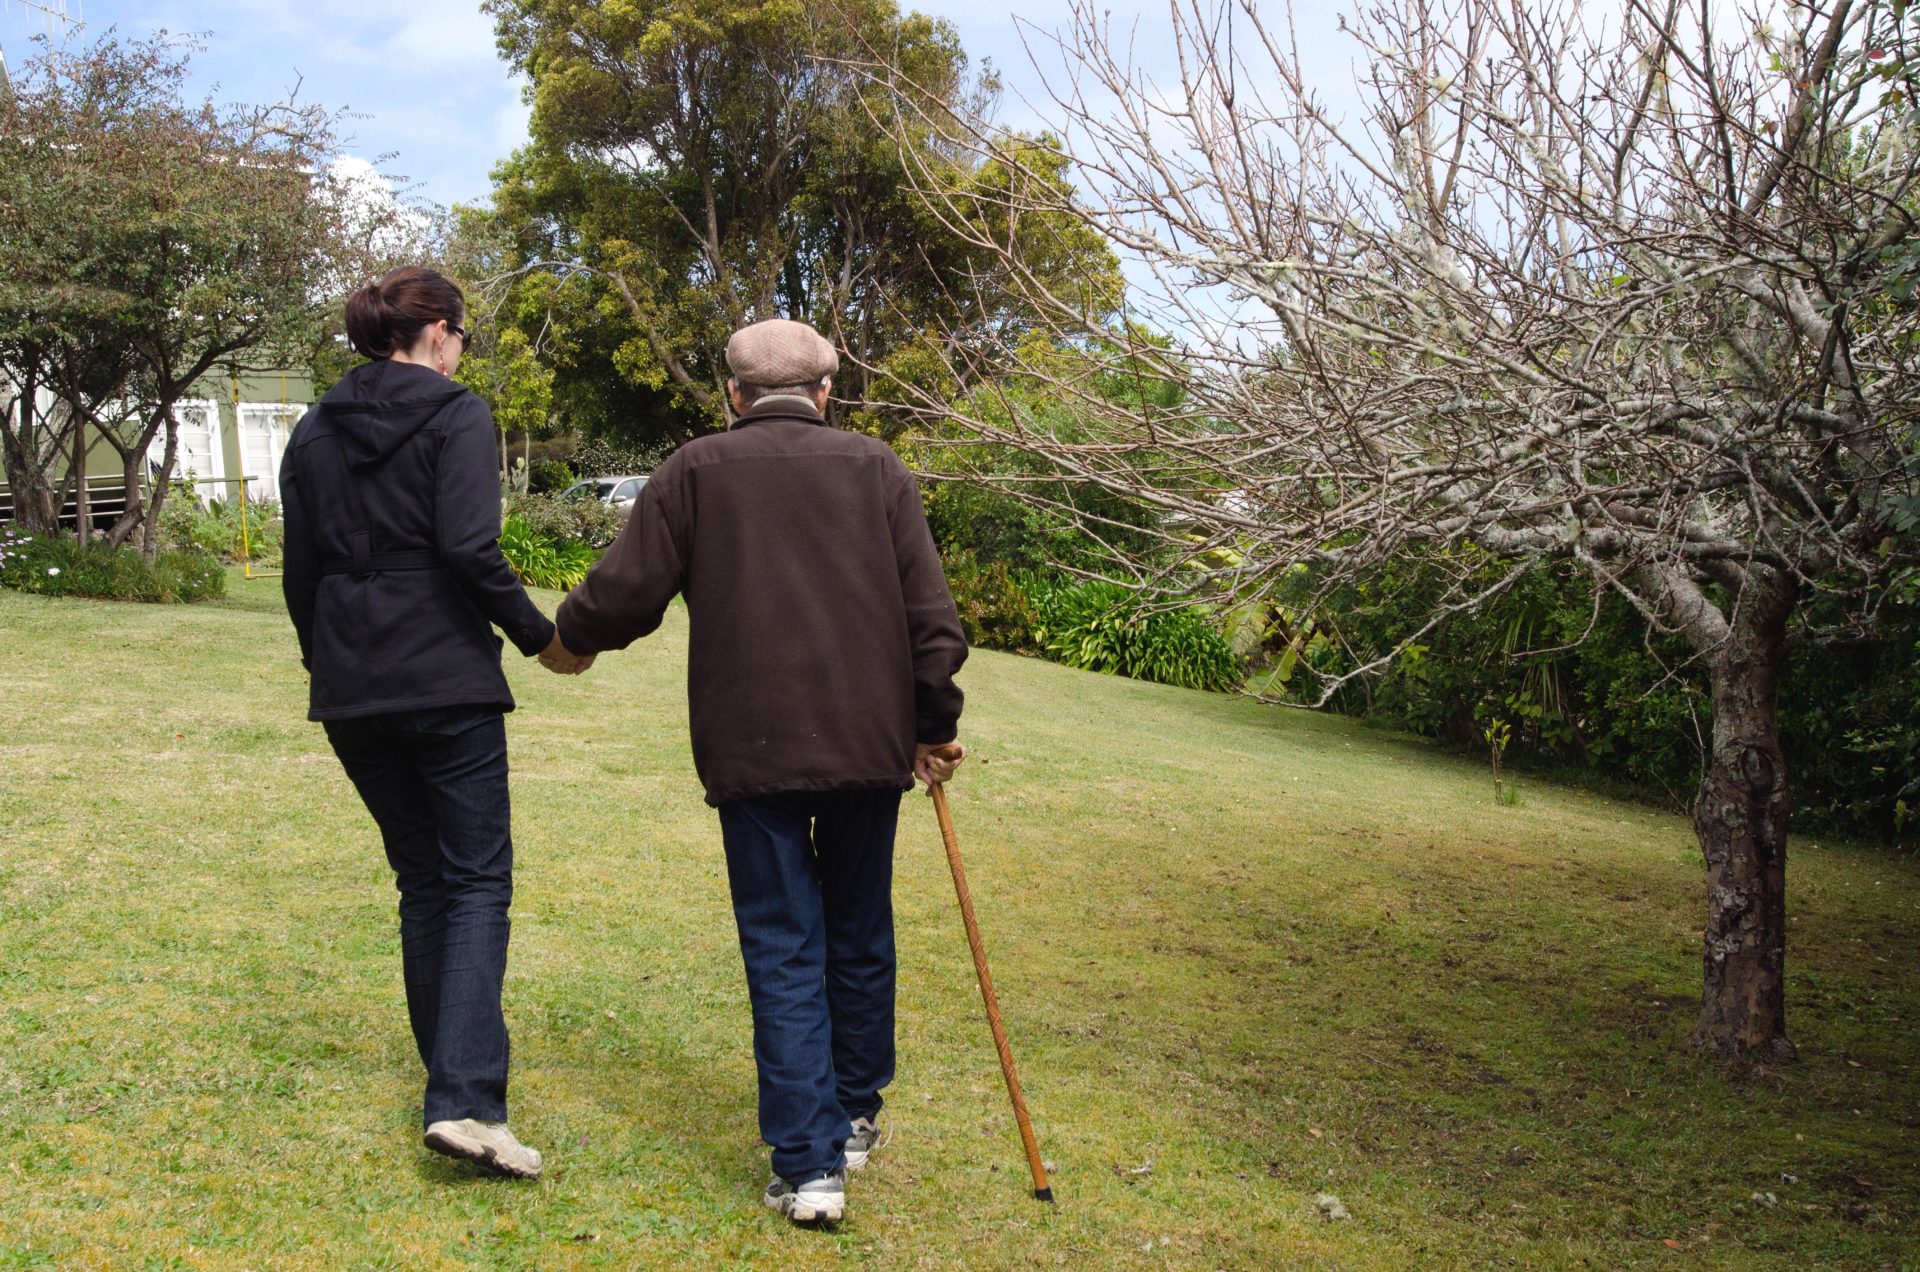 Una badante aiuta un anziano a camminare nel parco